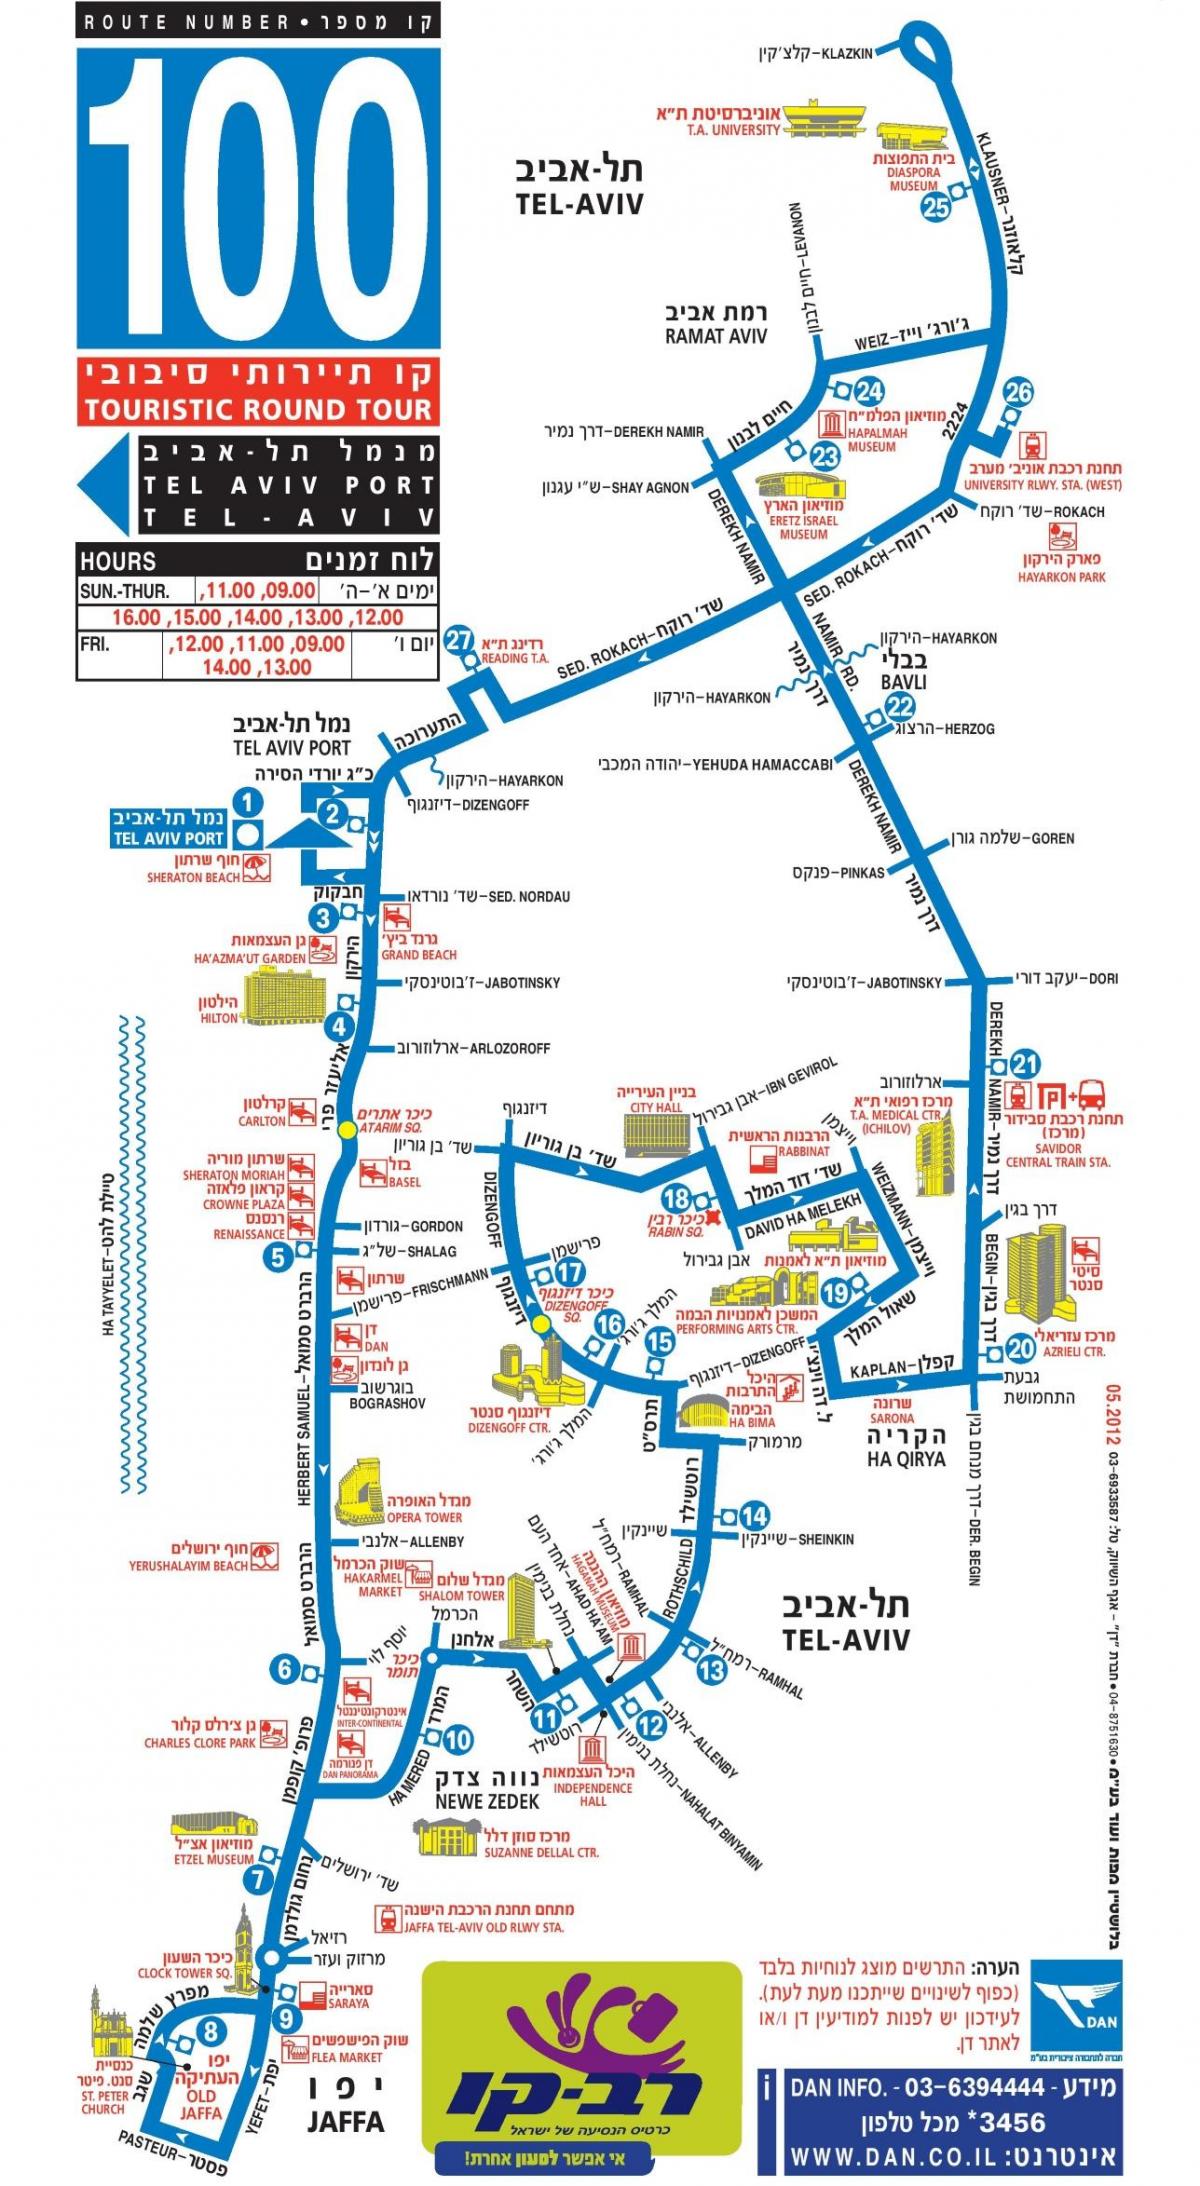 Tel Aviv Hop On Hop Off bus tours map